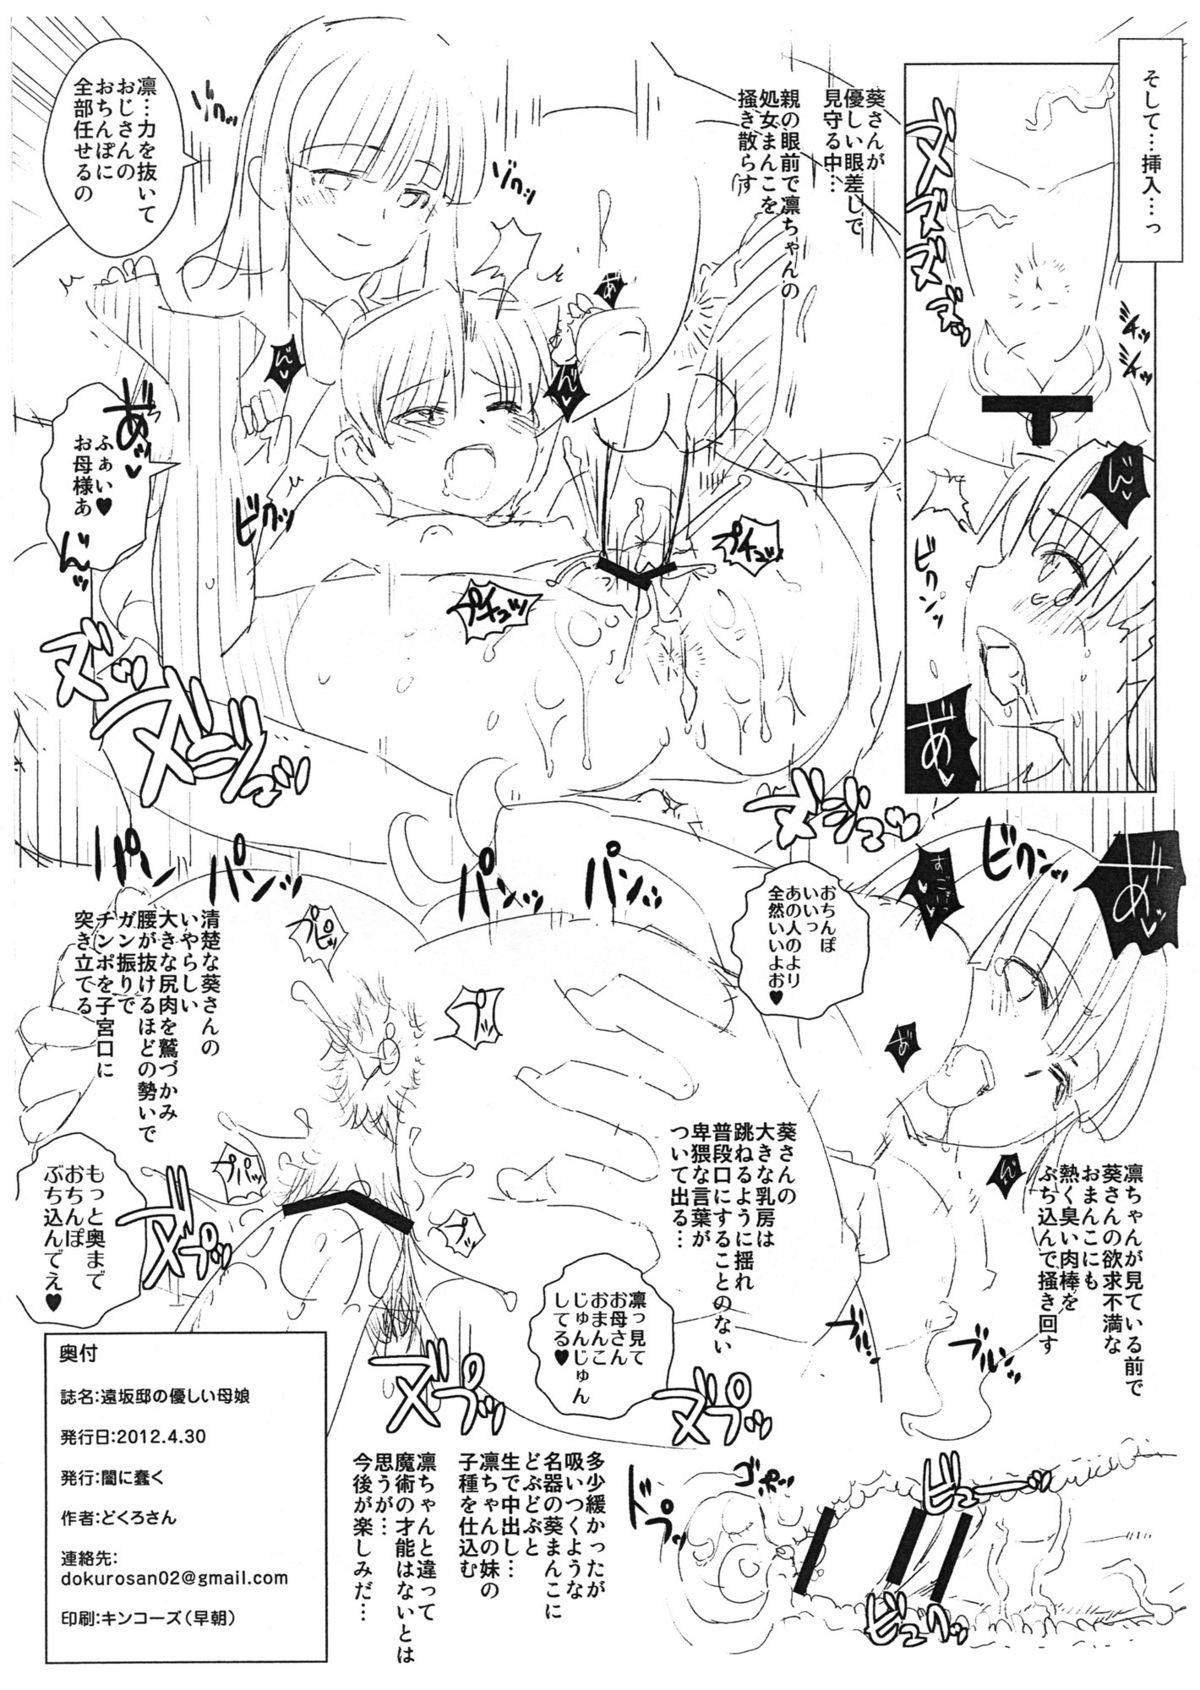 Stroking Tohsaka-tei no Hidoku Yasashii Shimai + Paper - Fate zero Cdmx - Page 26